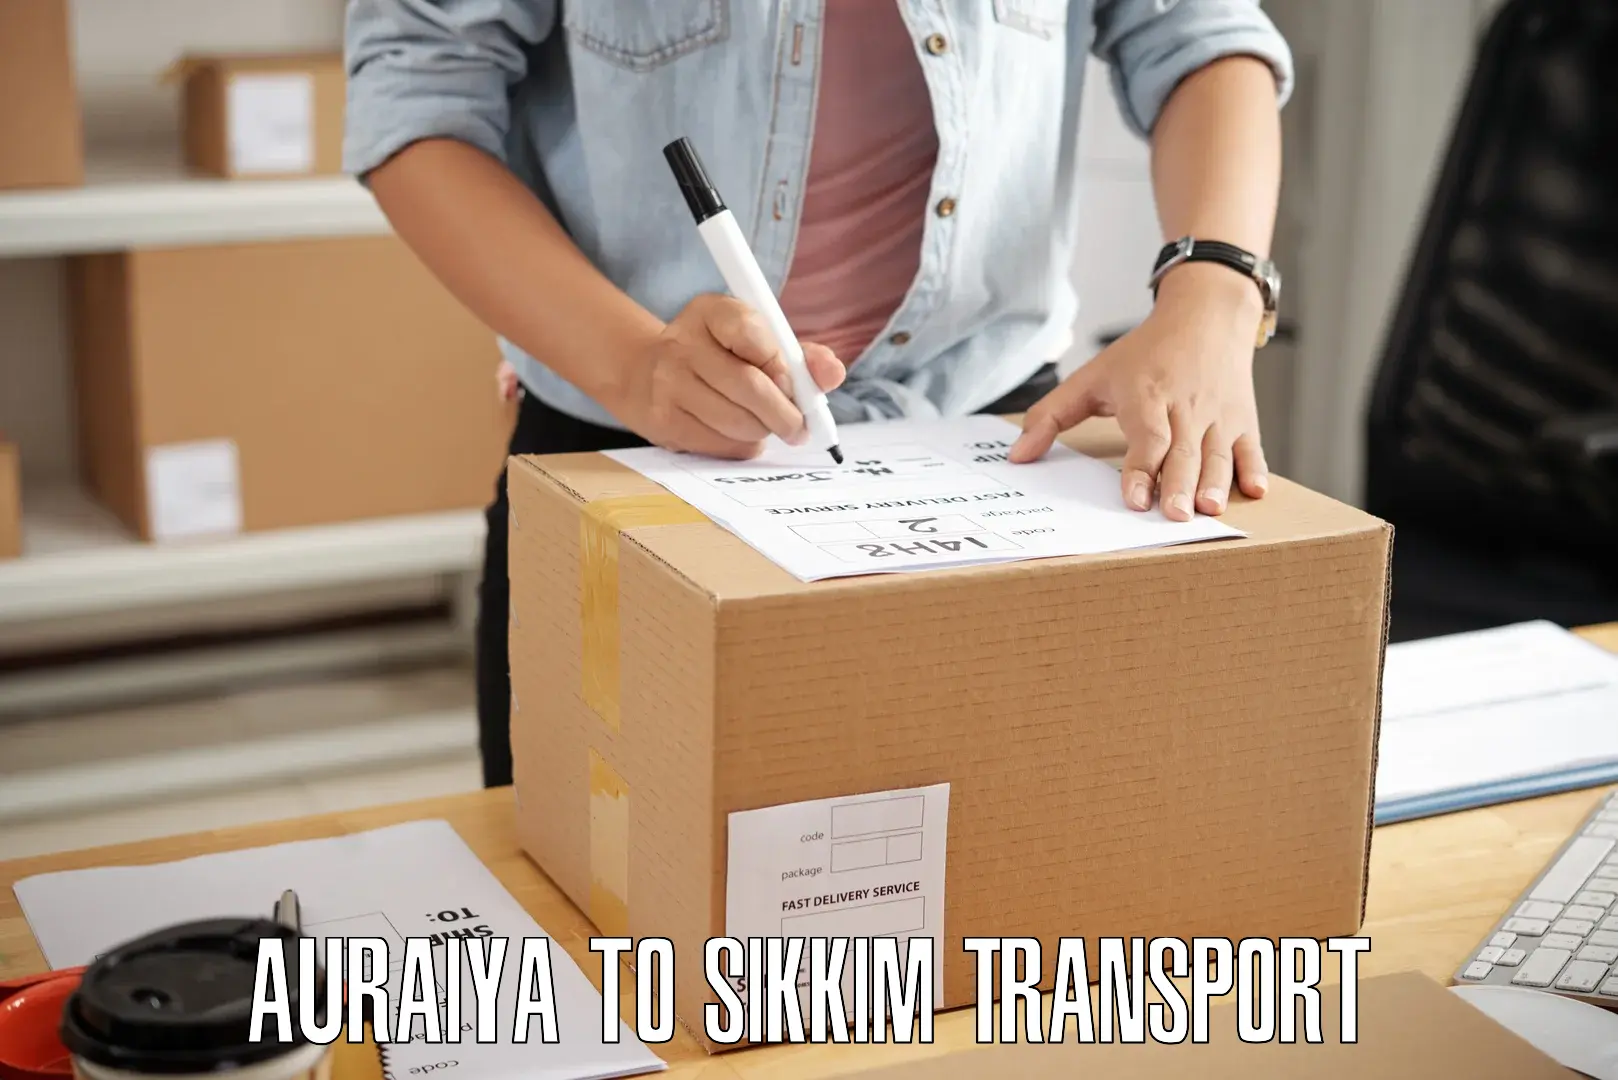 Furniture transport service Auraiya to Mangan